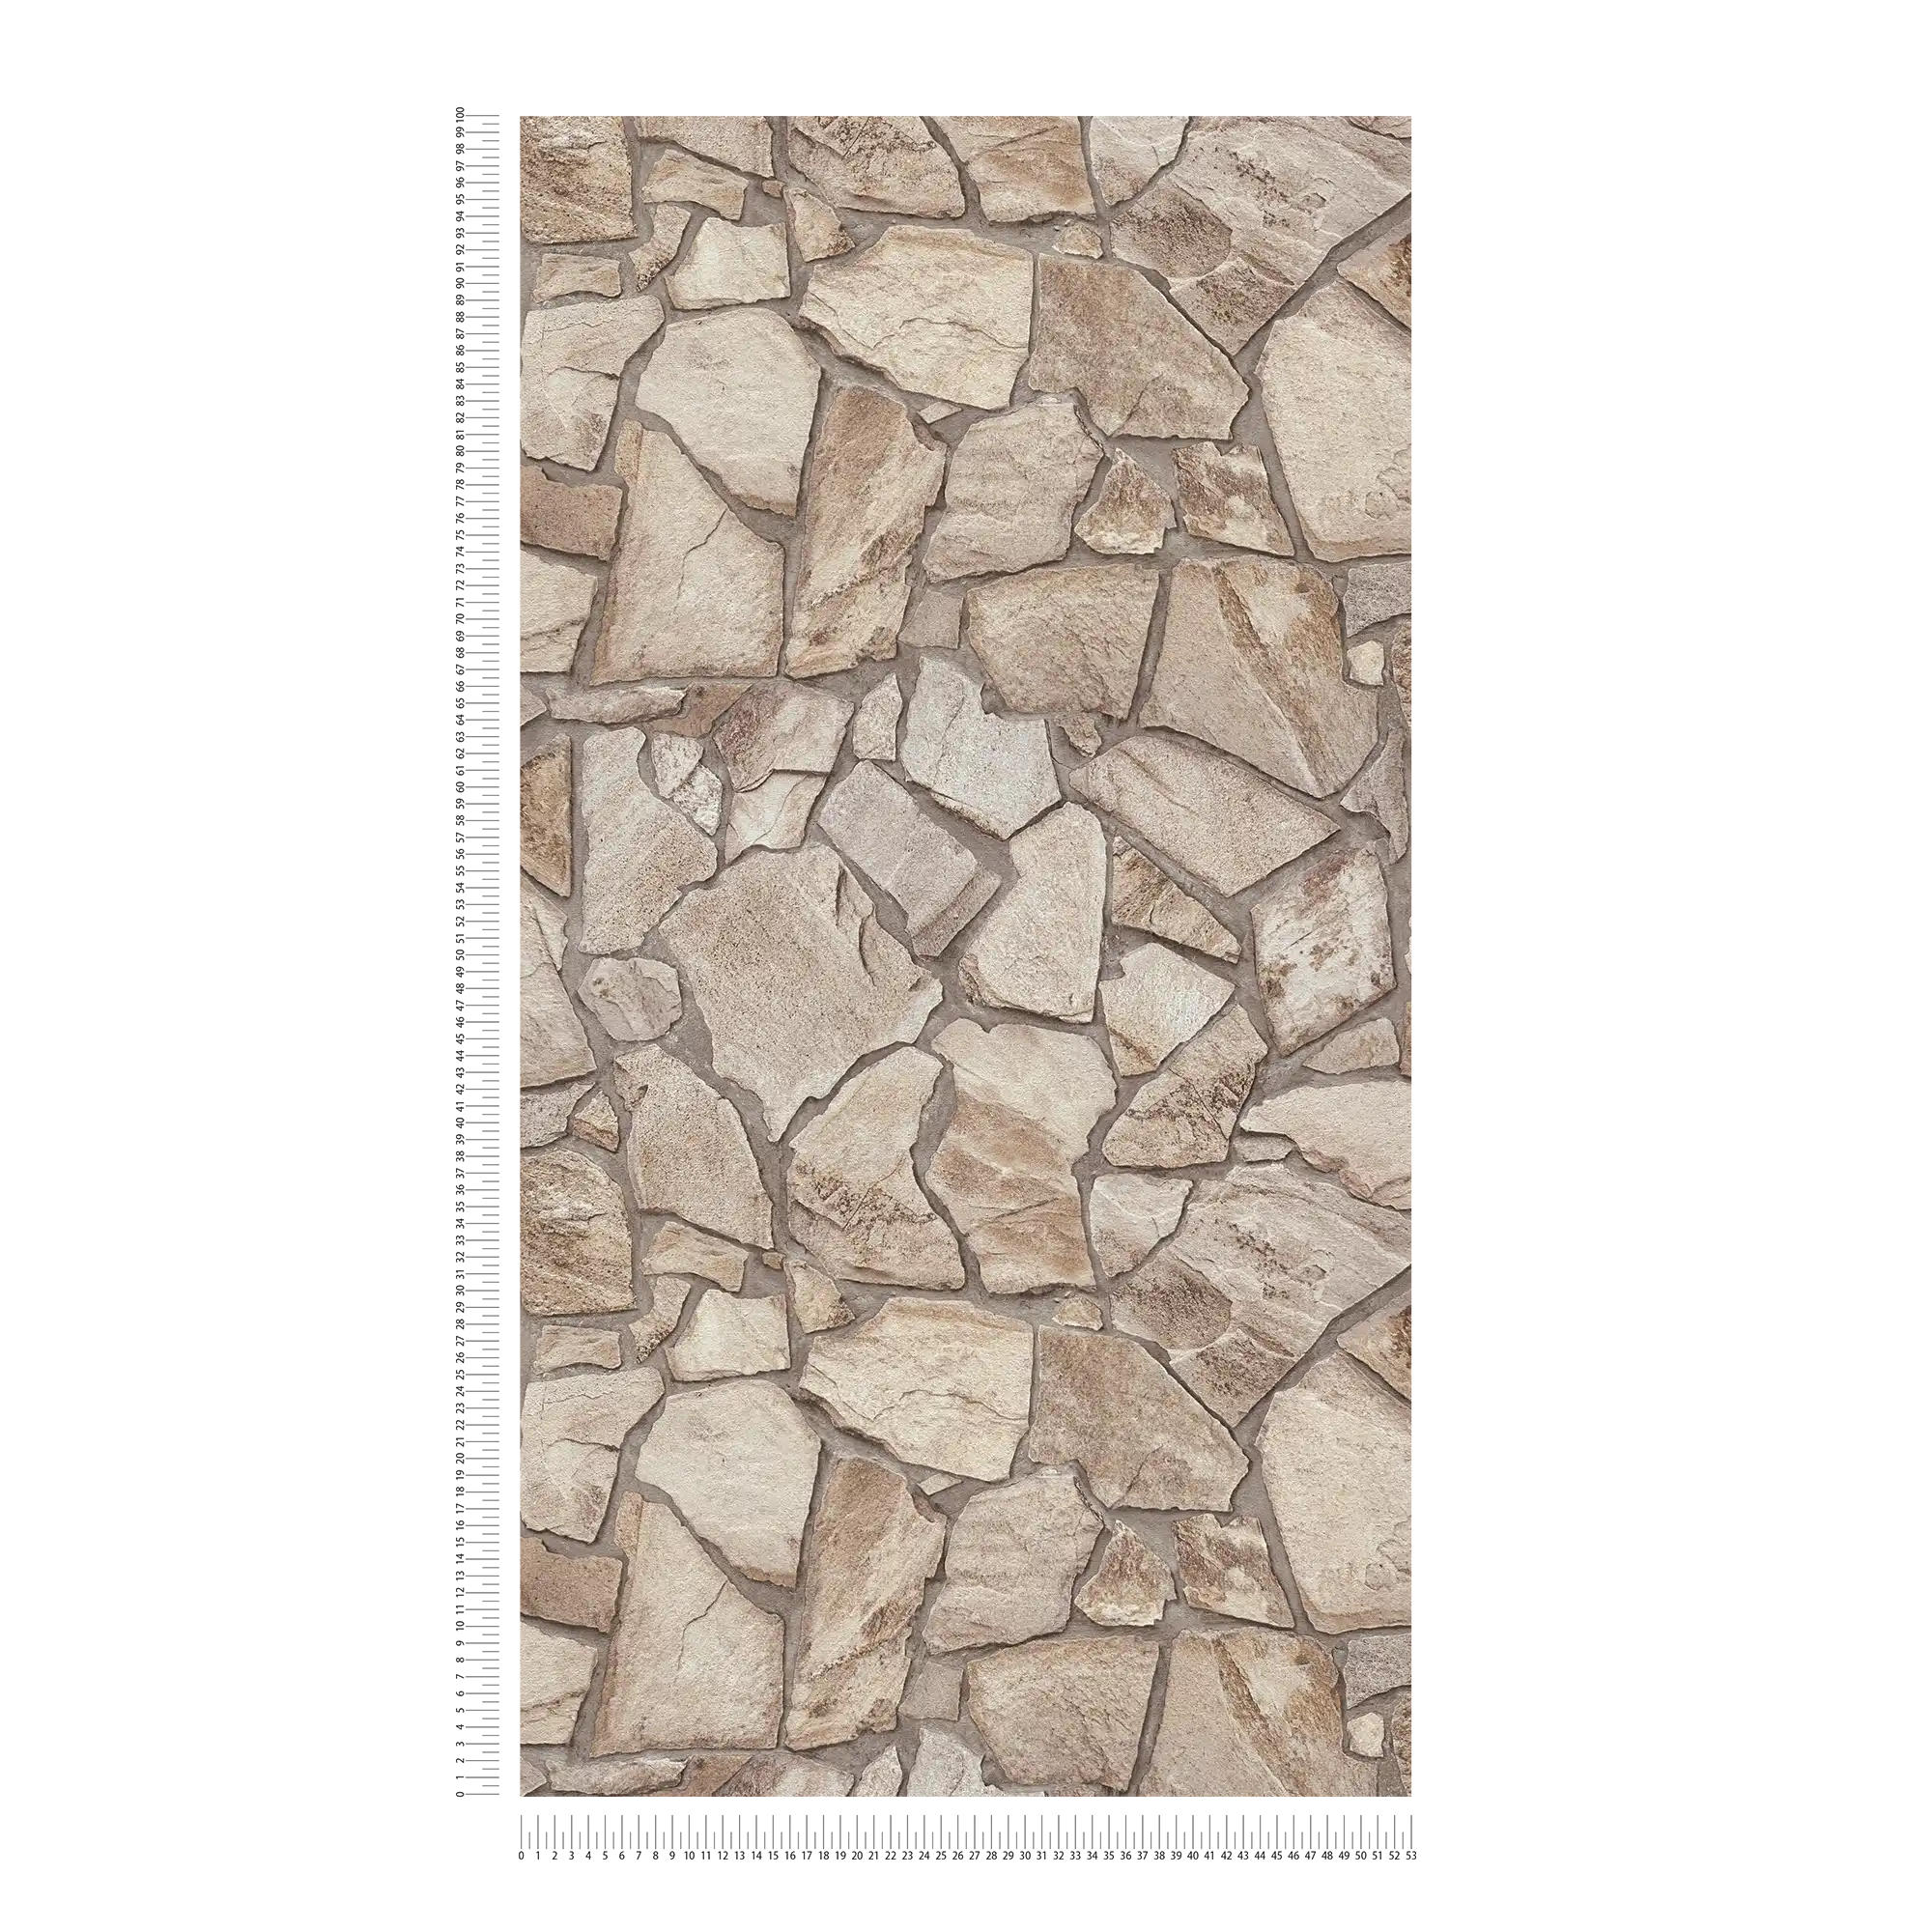             Vliestapete mit Steinoptik Mauer – Braun, Grau, Beige
        